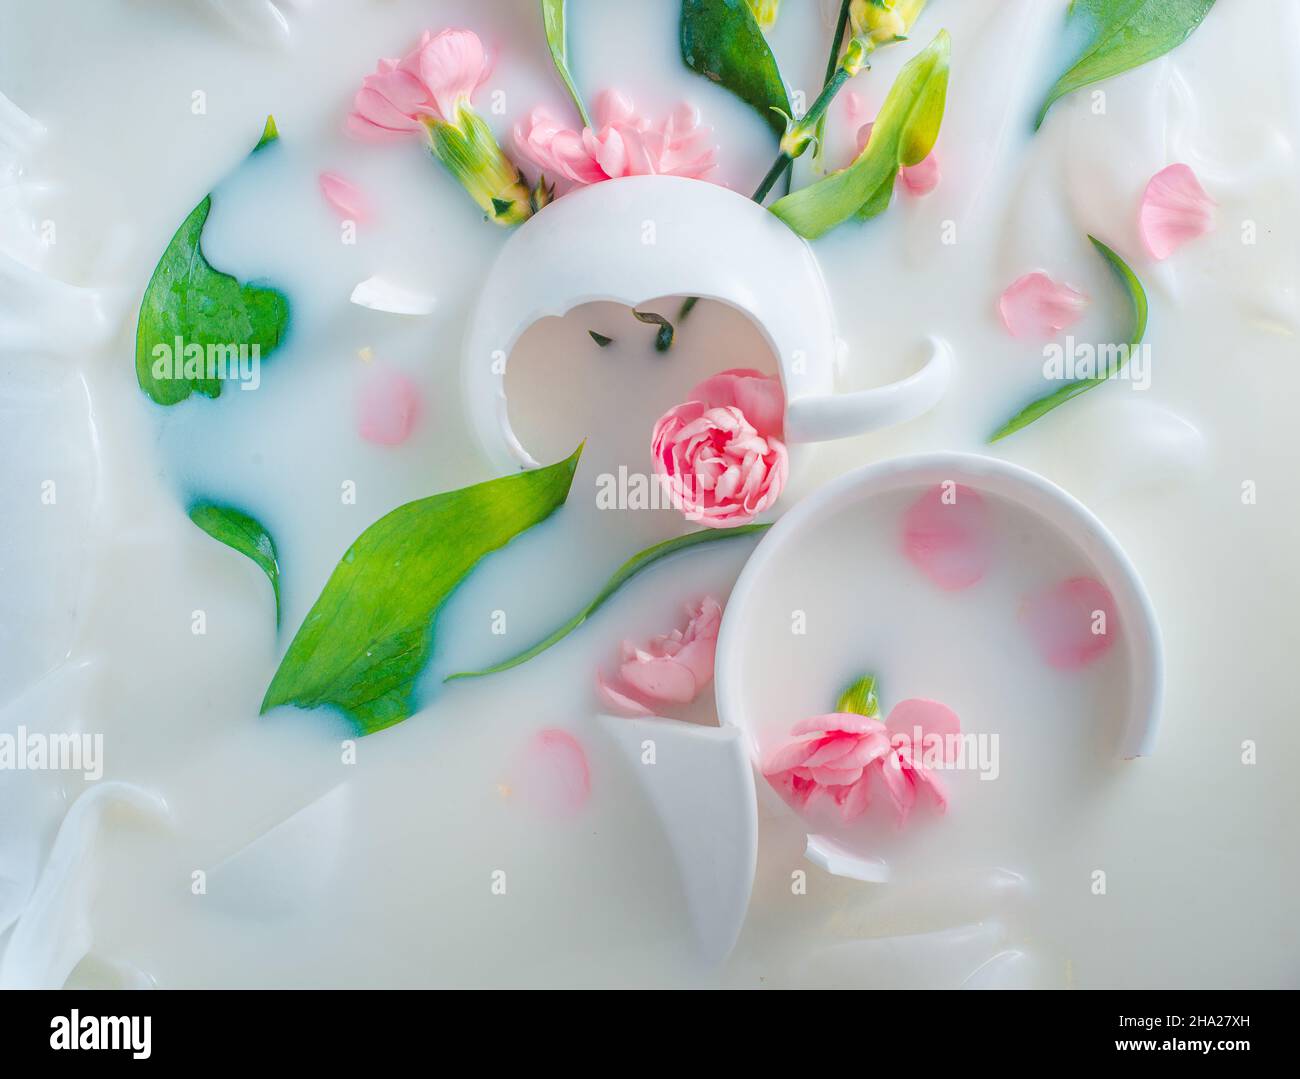 Coupes de porcelaine brisées et fleurs dans le lait, carte postale tendre Banque D'Images